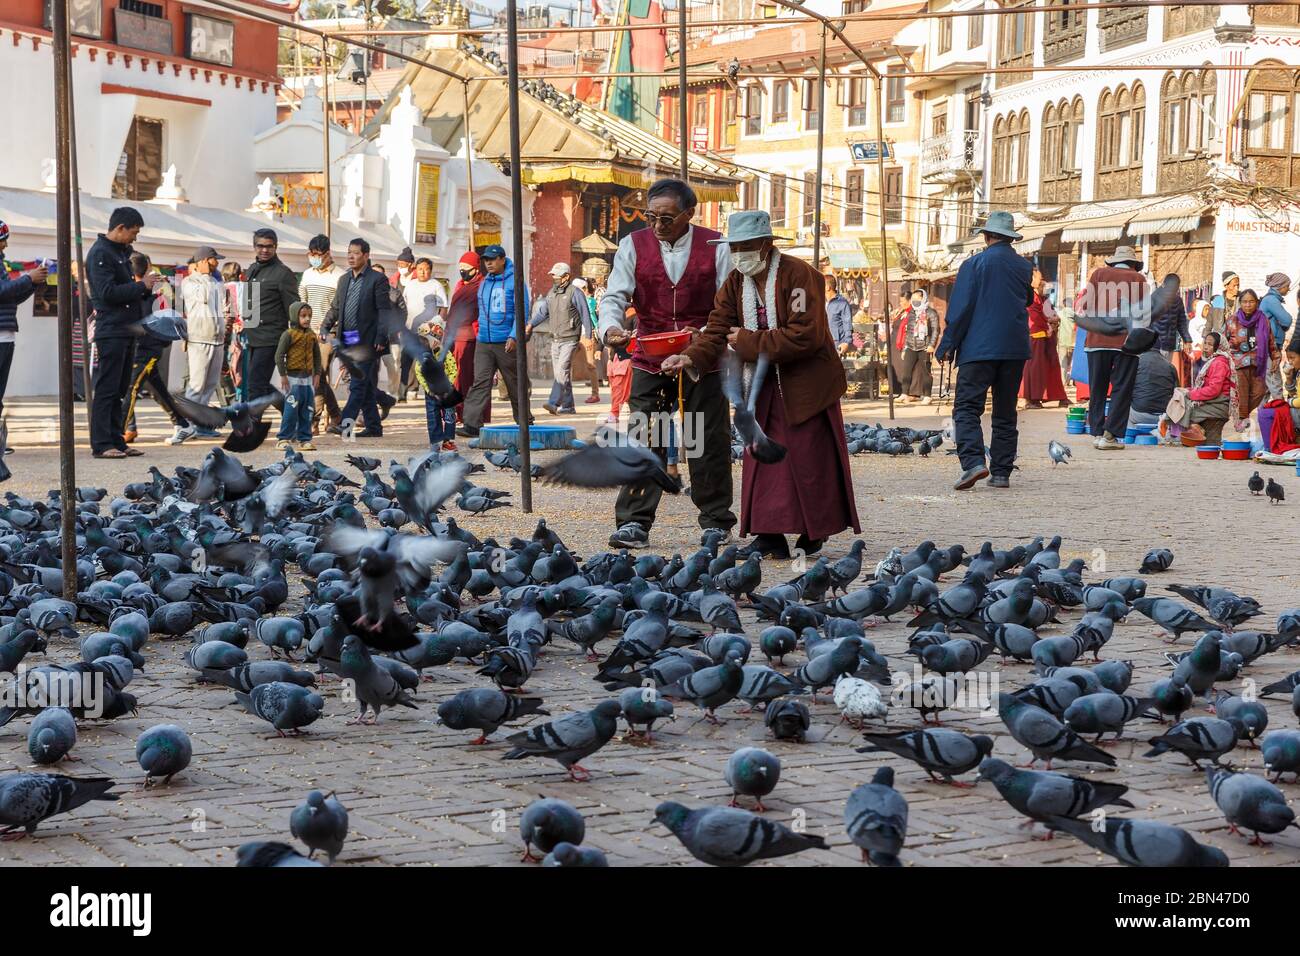 Katamandu, Nepal - November 12, 2016: An elderly Nepalese man and woman feed pigeons on the square near Boudhanath. Bouddha Stupa. Stock Photo